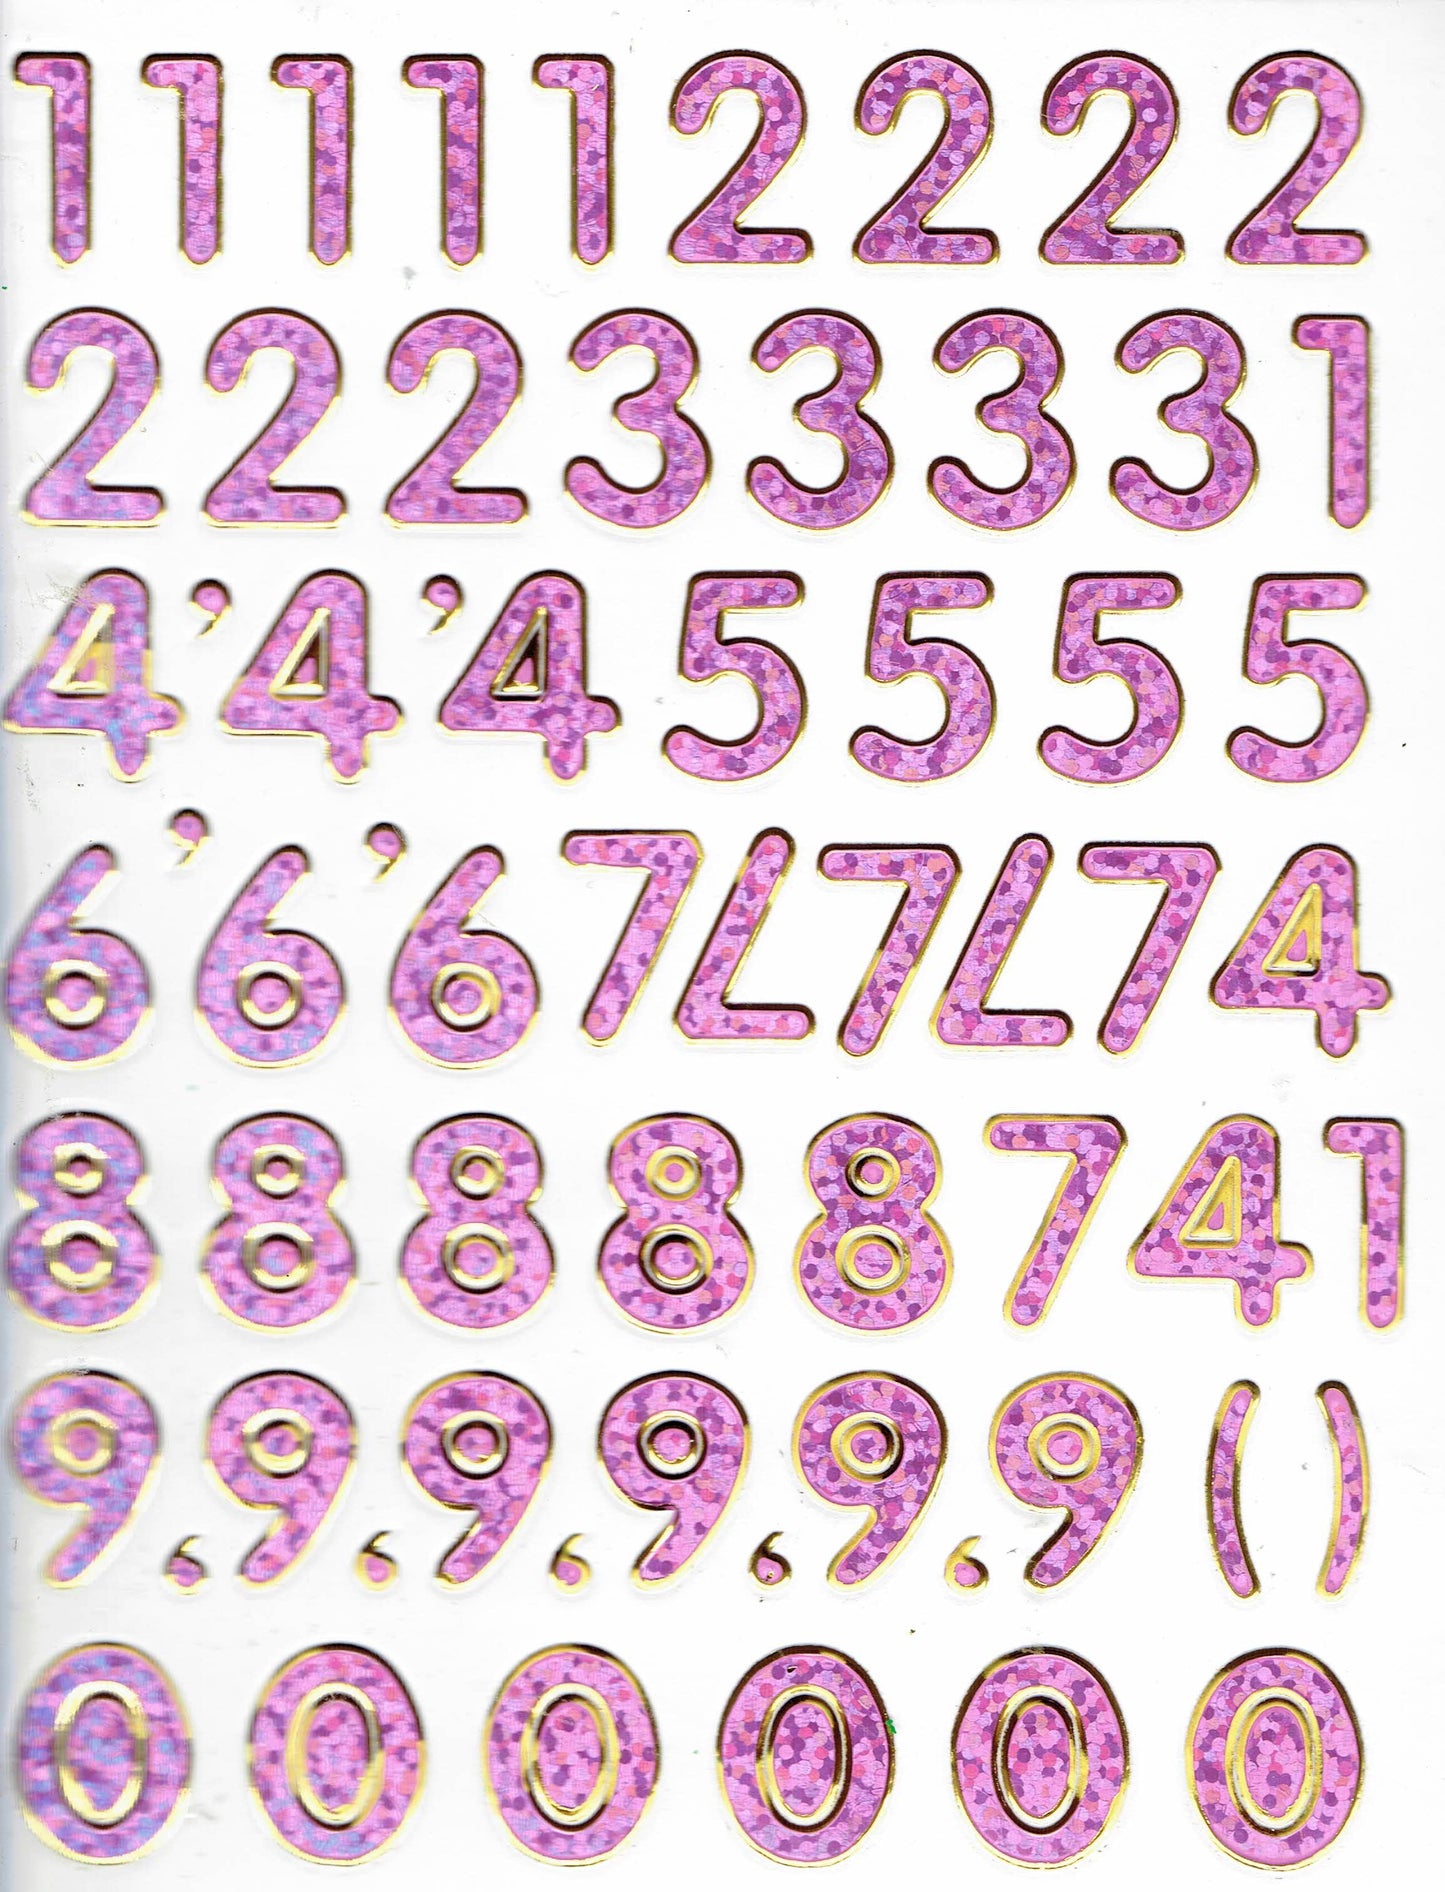 Zahlen Nummern rosa 123 Höhe 14 mm Aufkleber Sticker metallic Glitzer Effekt Schule Büro Ordner Kinder Basteln Kindergarten 1 Bogen 228